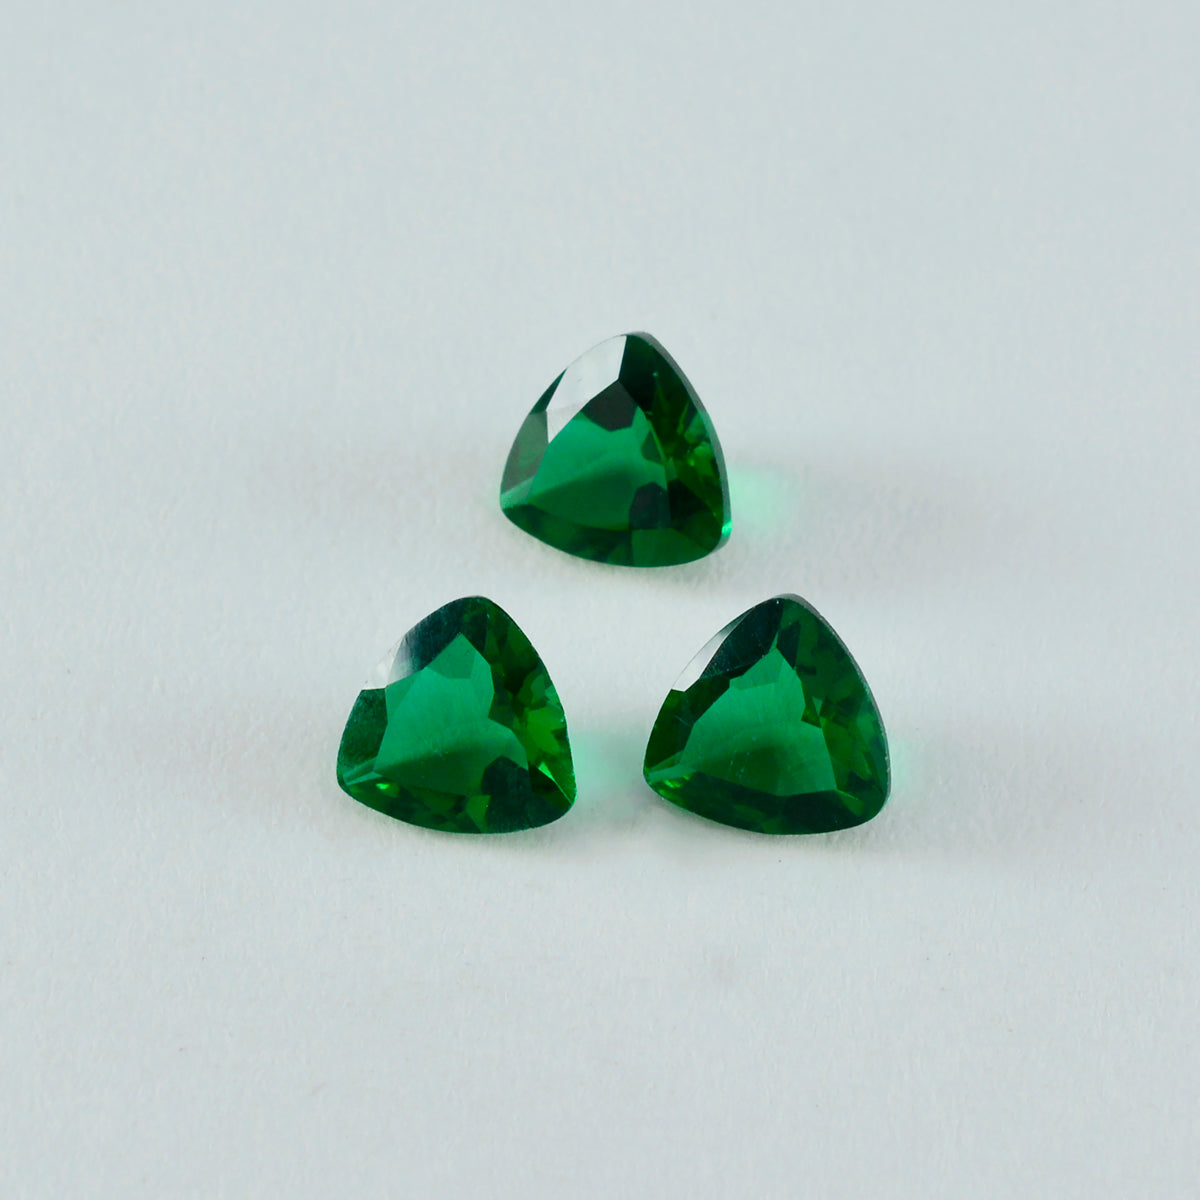 Riyogems 1 pieza de esmeralda verde CZ facetada 14x14 mm forma de trillón A+1 piedra preciosa de calidad